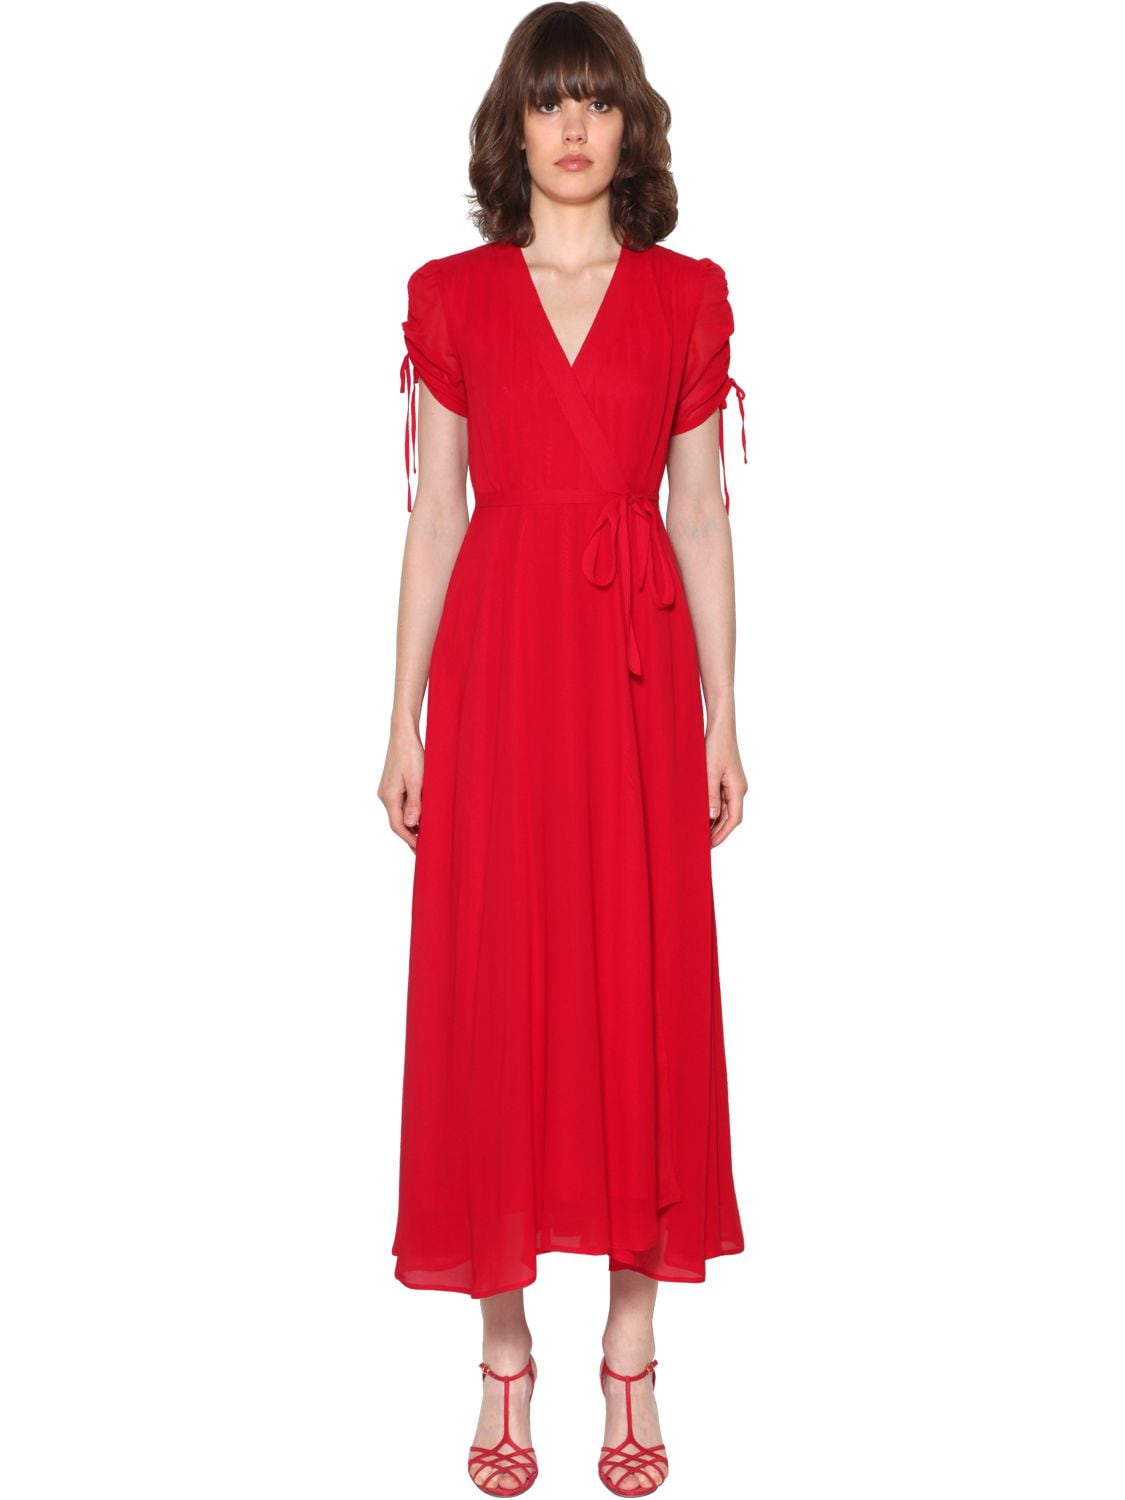 polo ralph lauren red dress